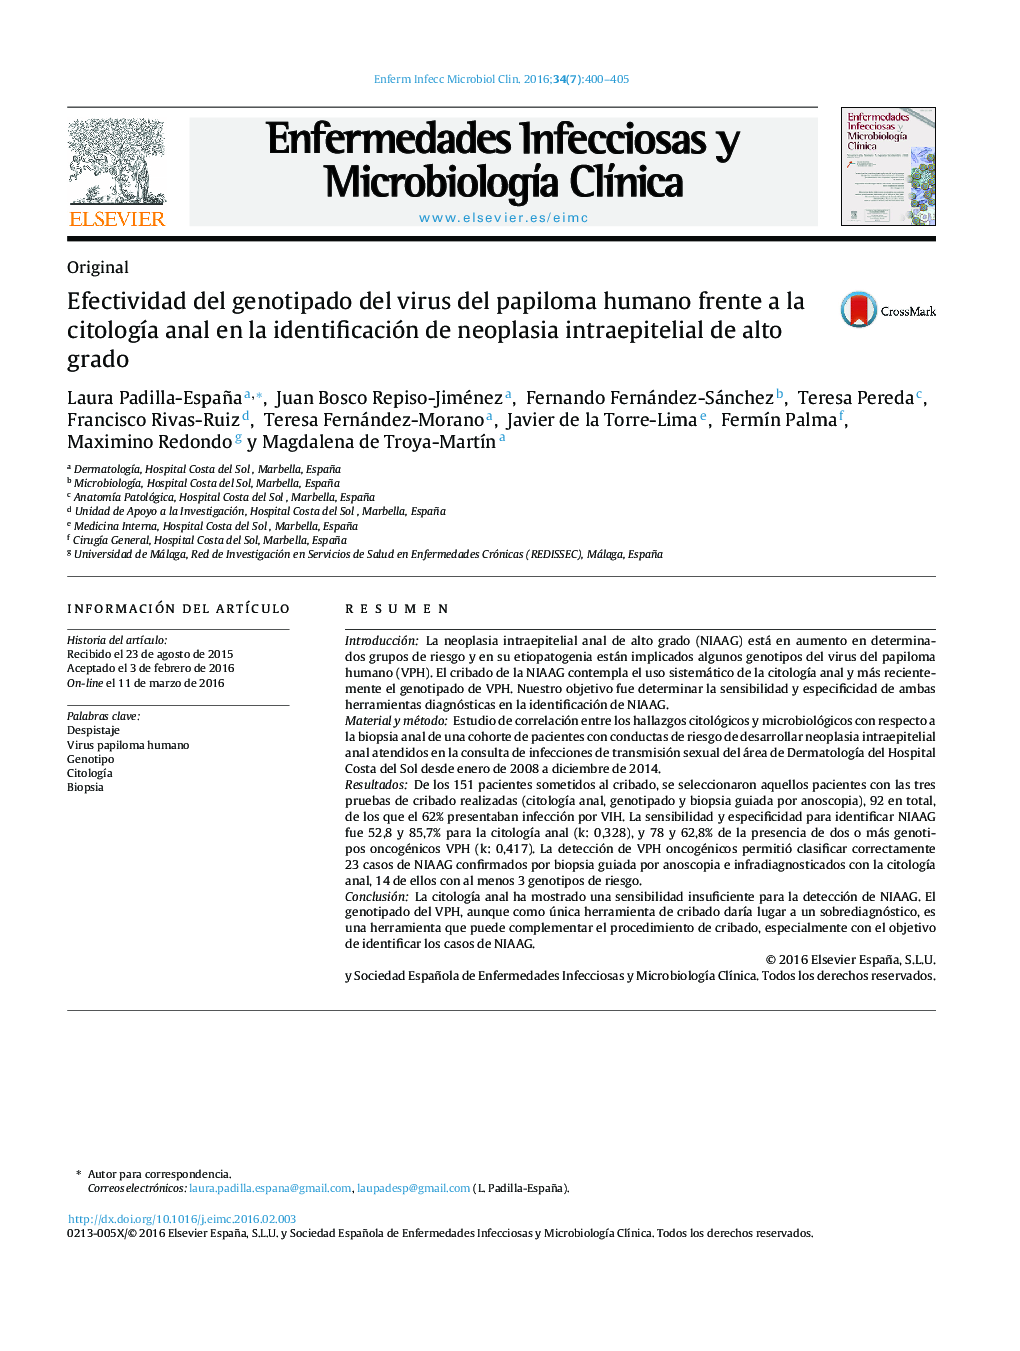 Efectividad del genotipado del virus del papiloma humano frente a la citologÃ­a anal en la identificación de neoplasia intraepitelial de alto grado